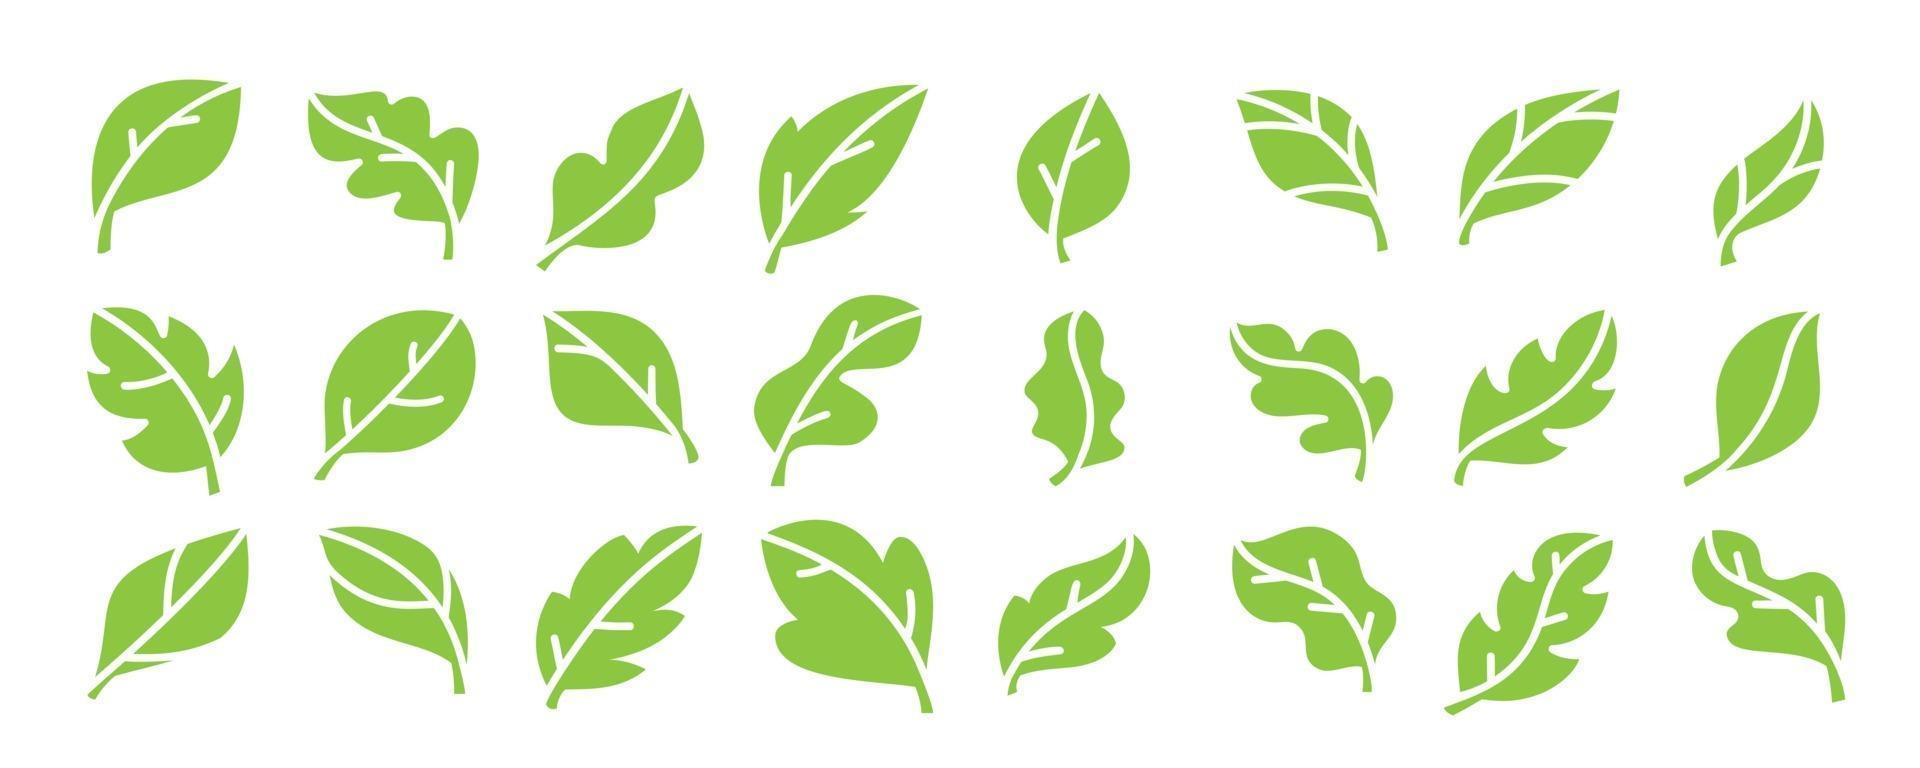 vettore di icone di foglia. collezione di design del logo di foglie verdi.